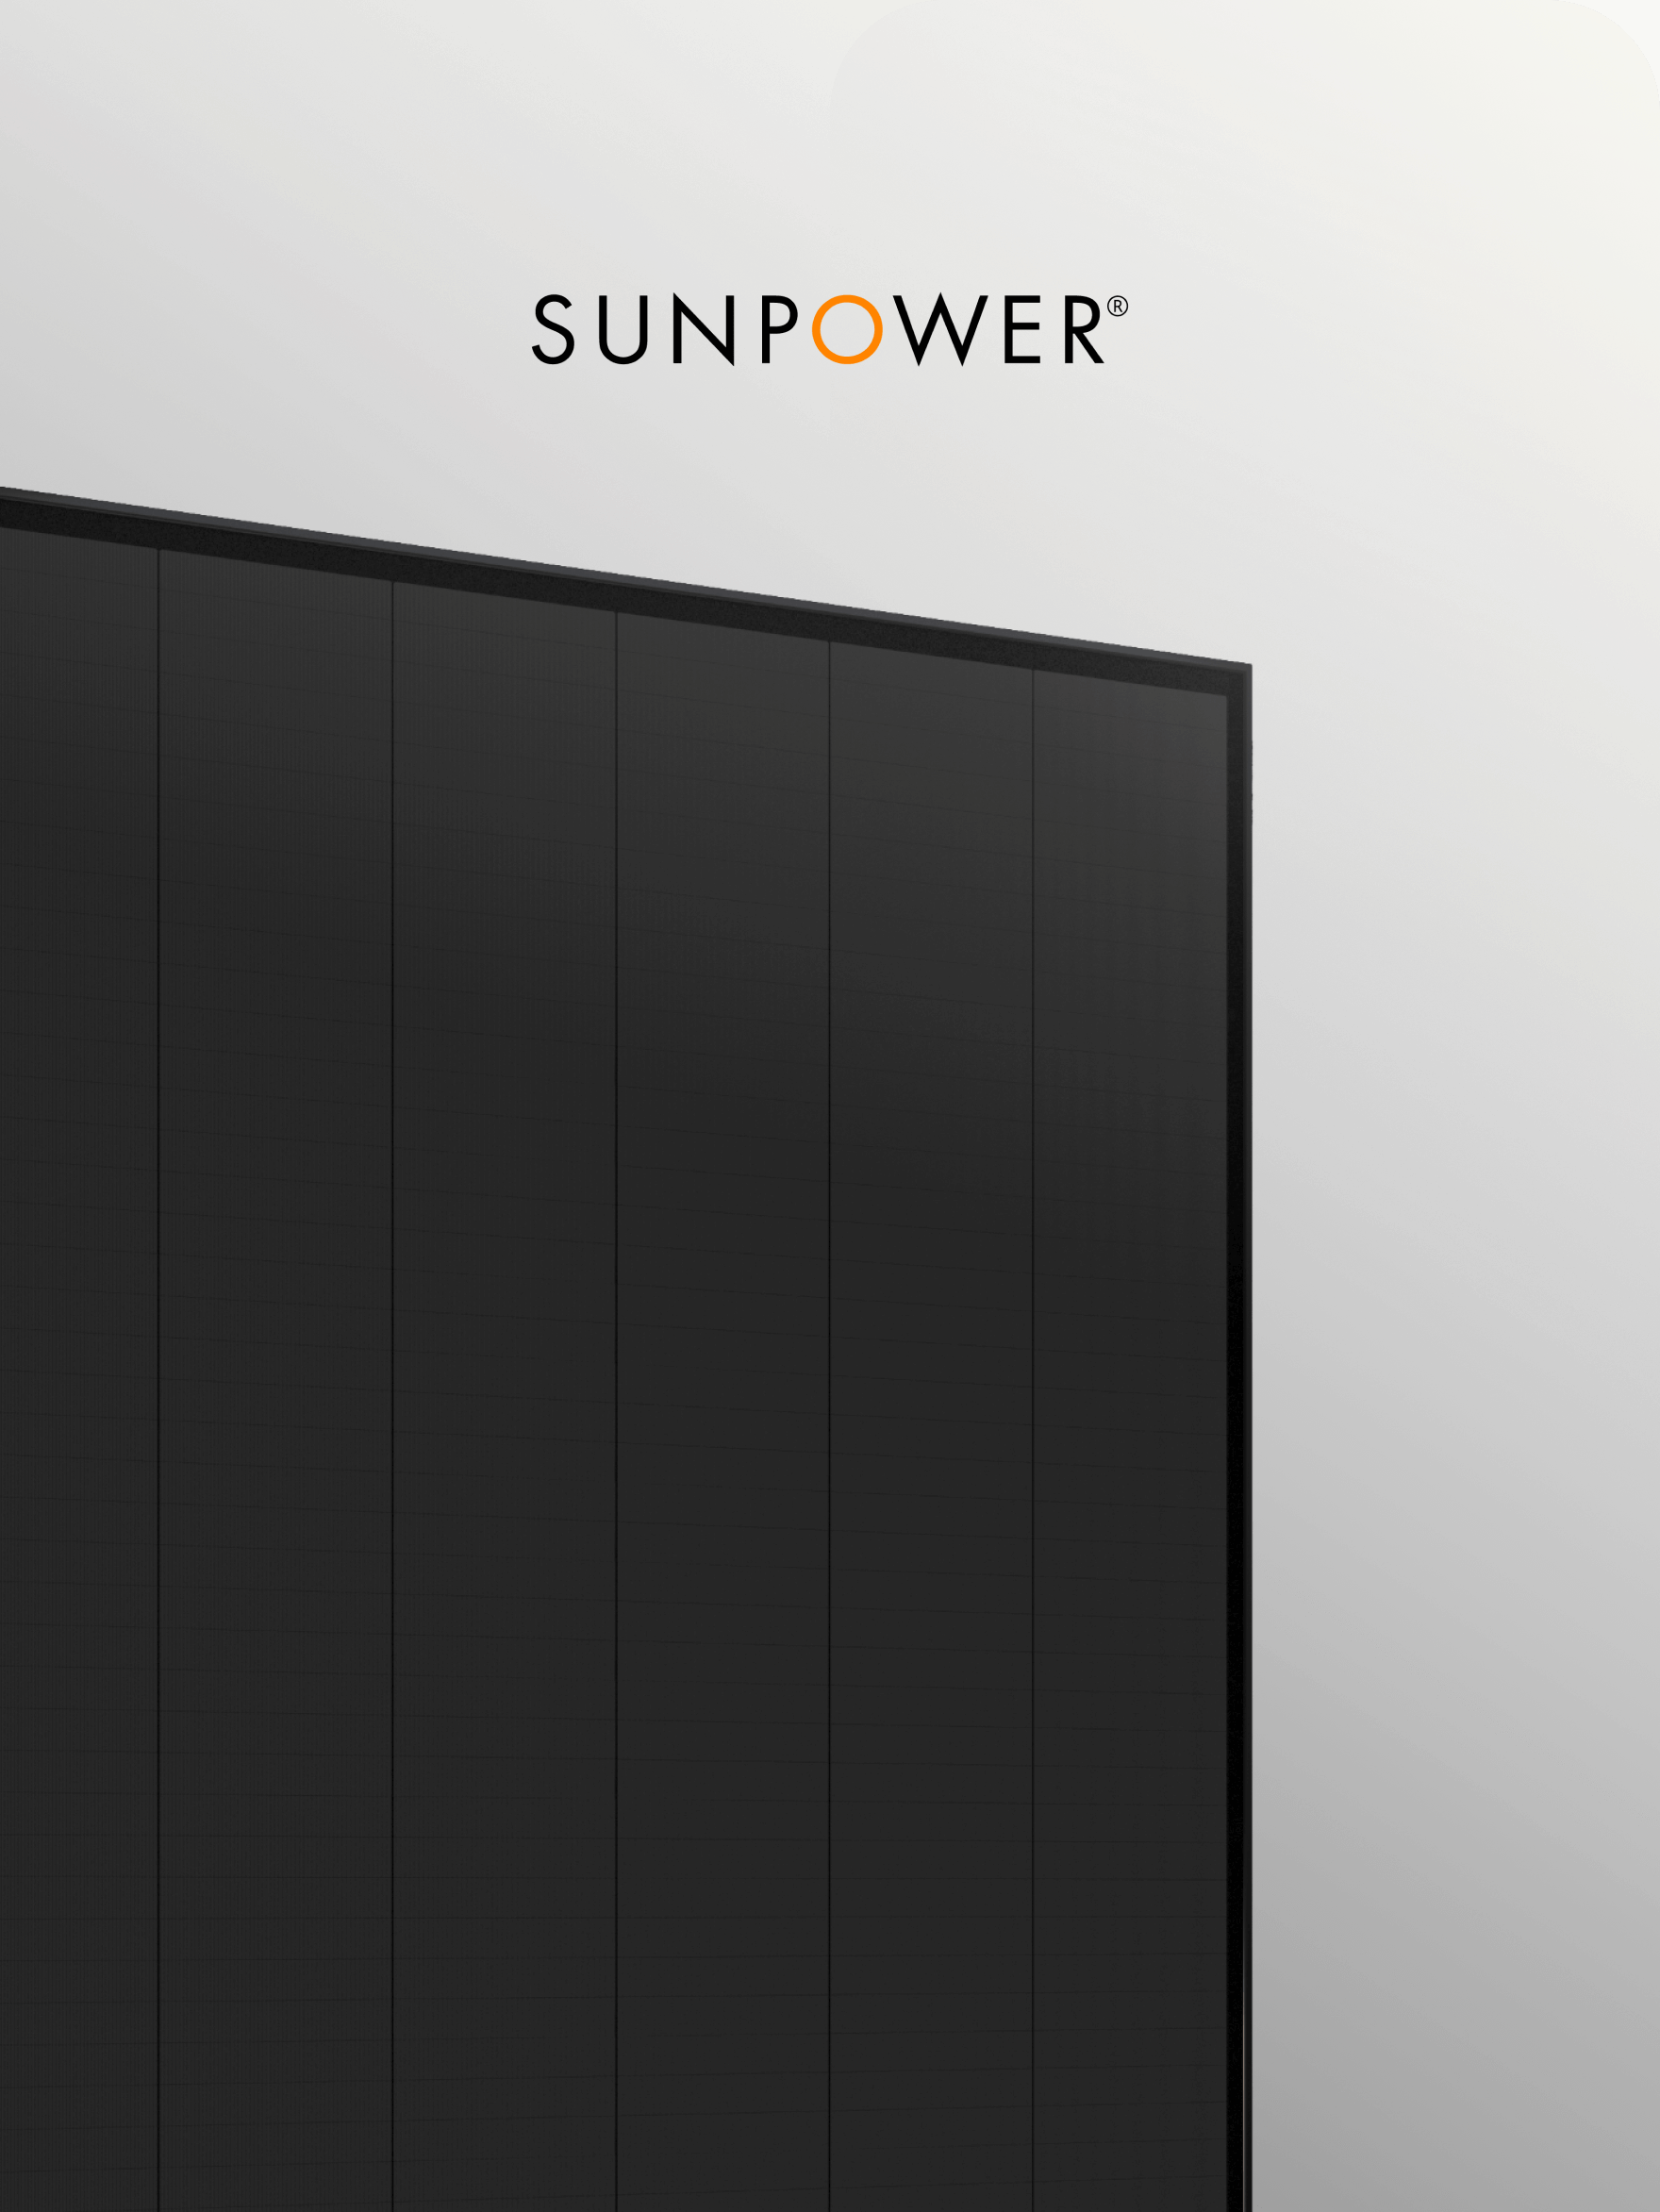 Sunpower performance 6 solcellepanel fra 1komma5